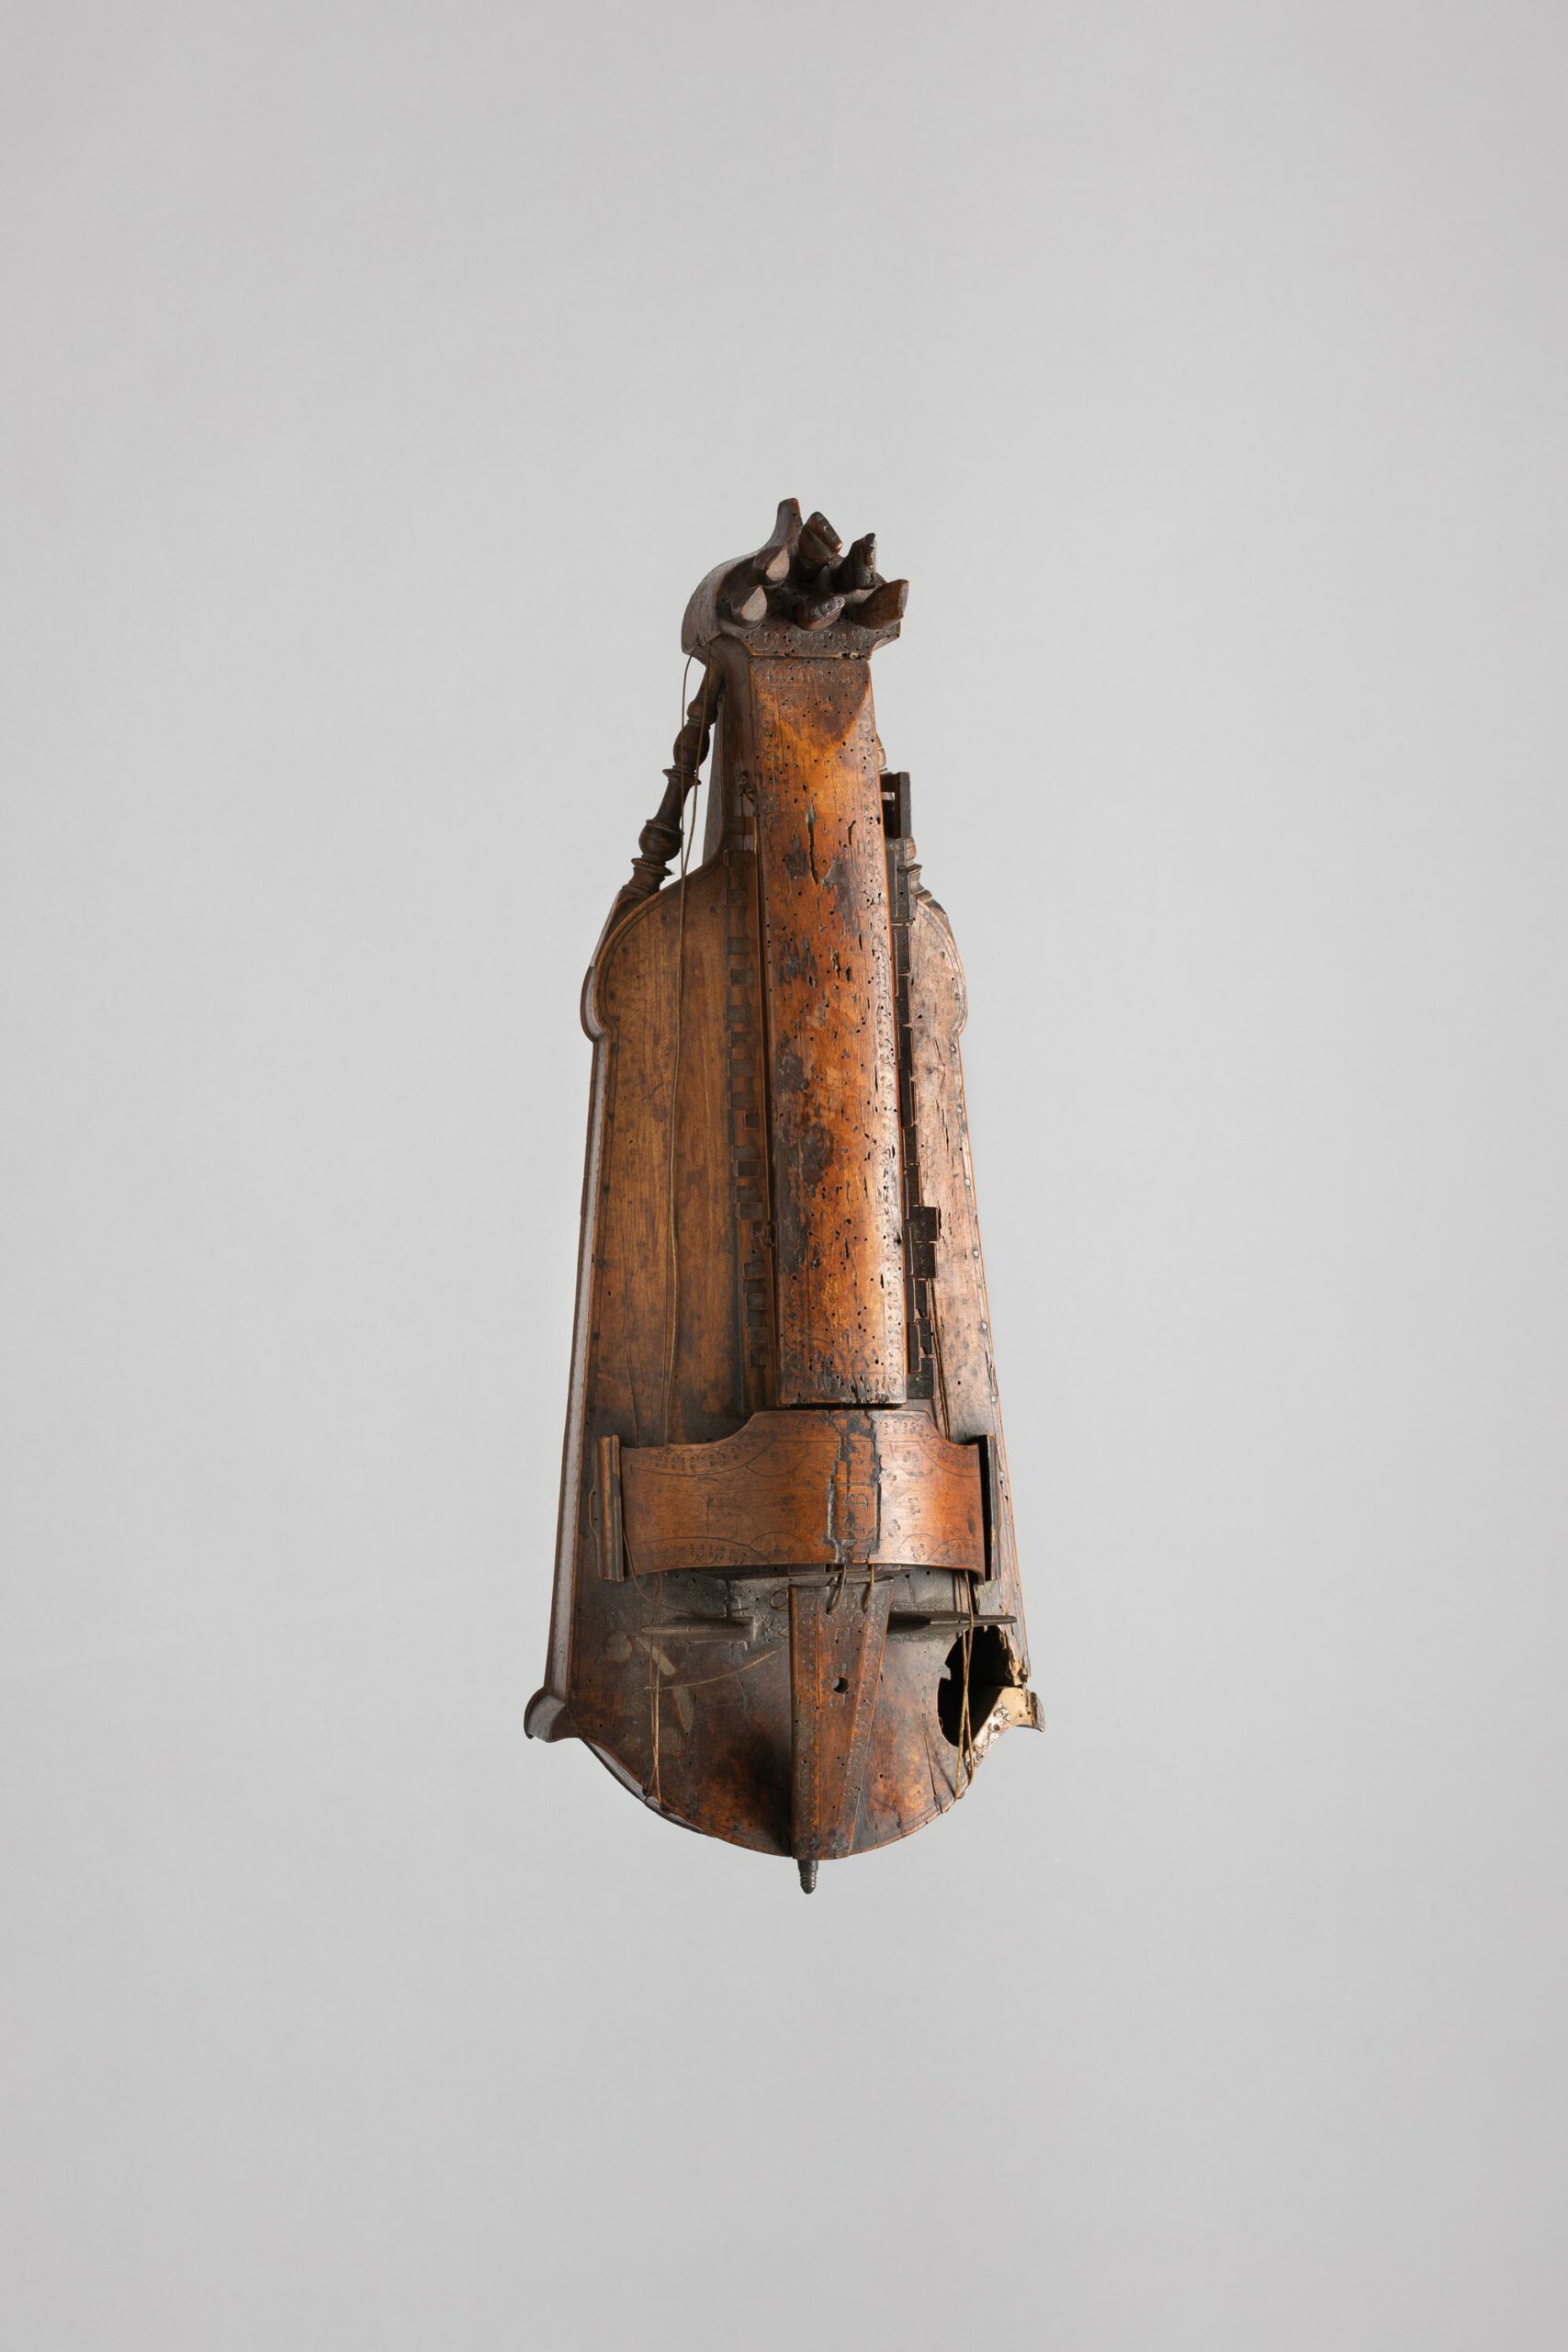 Vielle plate à colonnettes, probablement XVIIIème - Collection Calas Instrument mis en vente par Vichy Enchères le 5 novembre 2022 © C. Darbelet